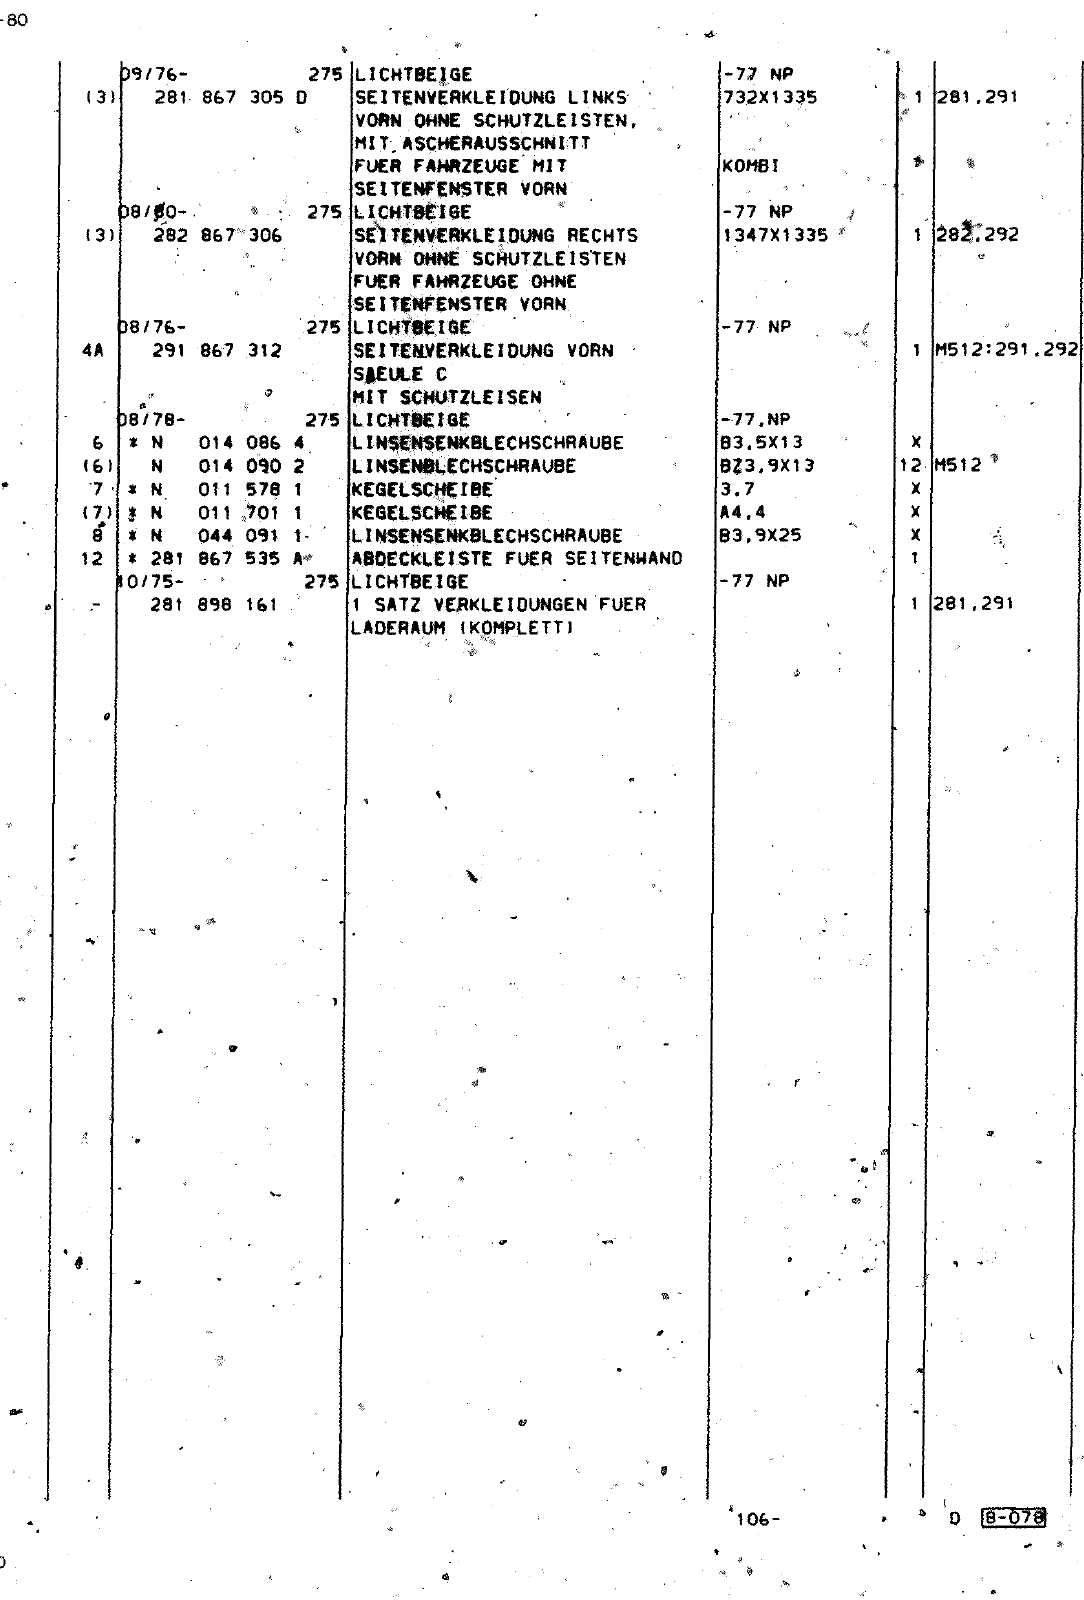 Vorschau Lastentransporter LT F-28-D-007 273 Seite 592